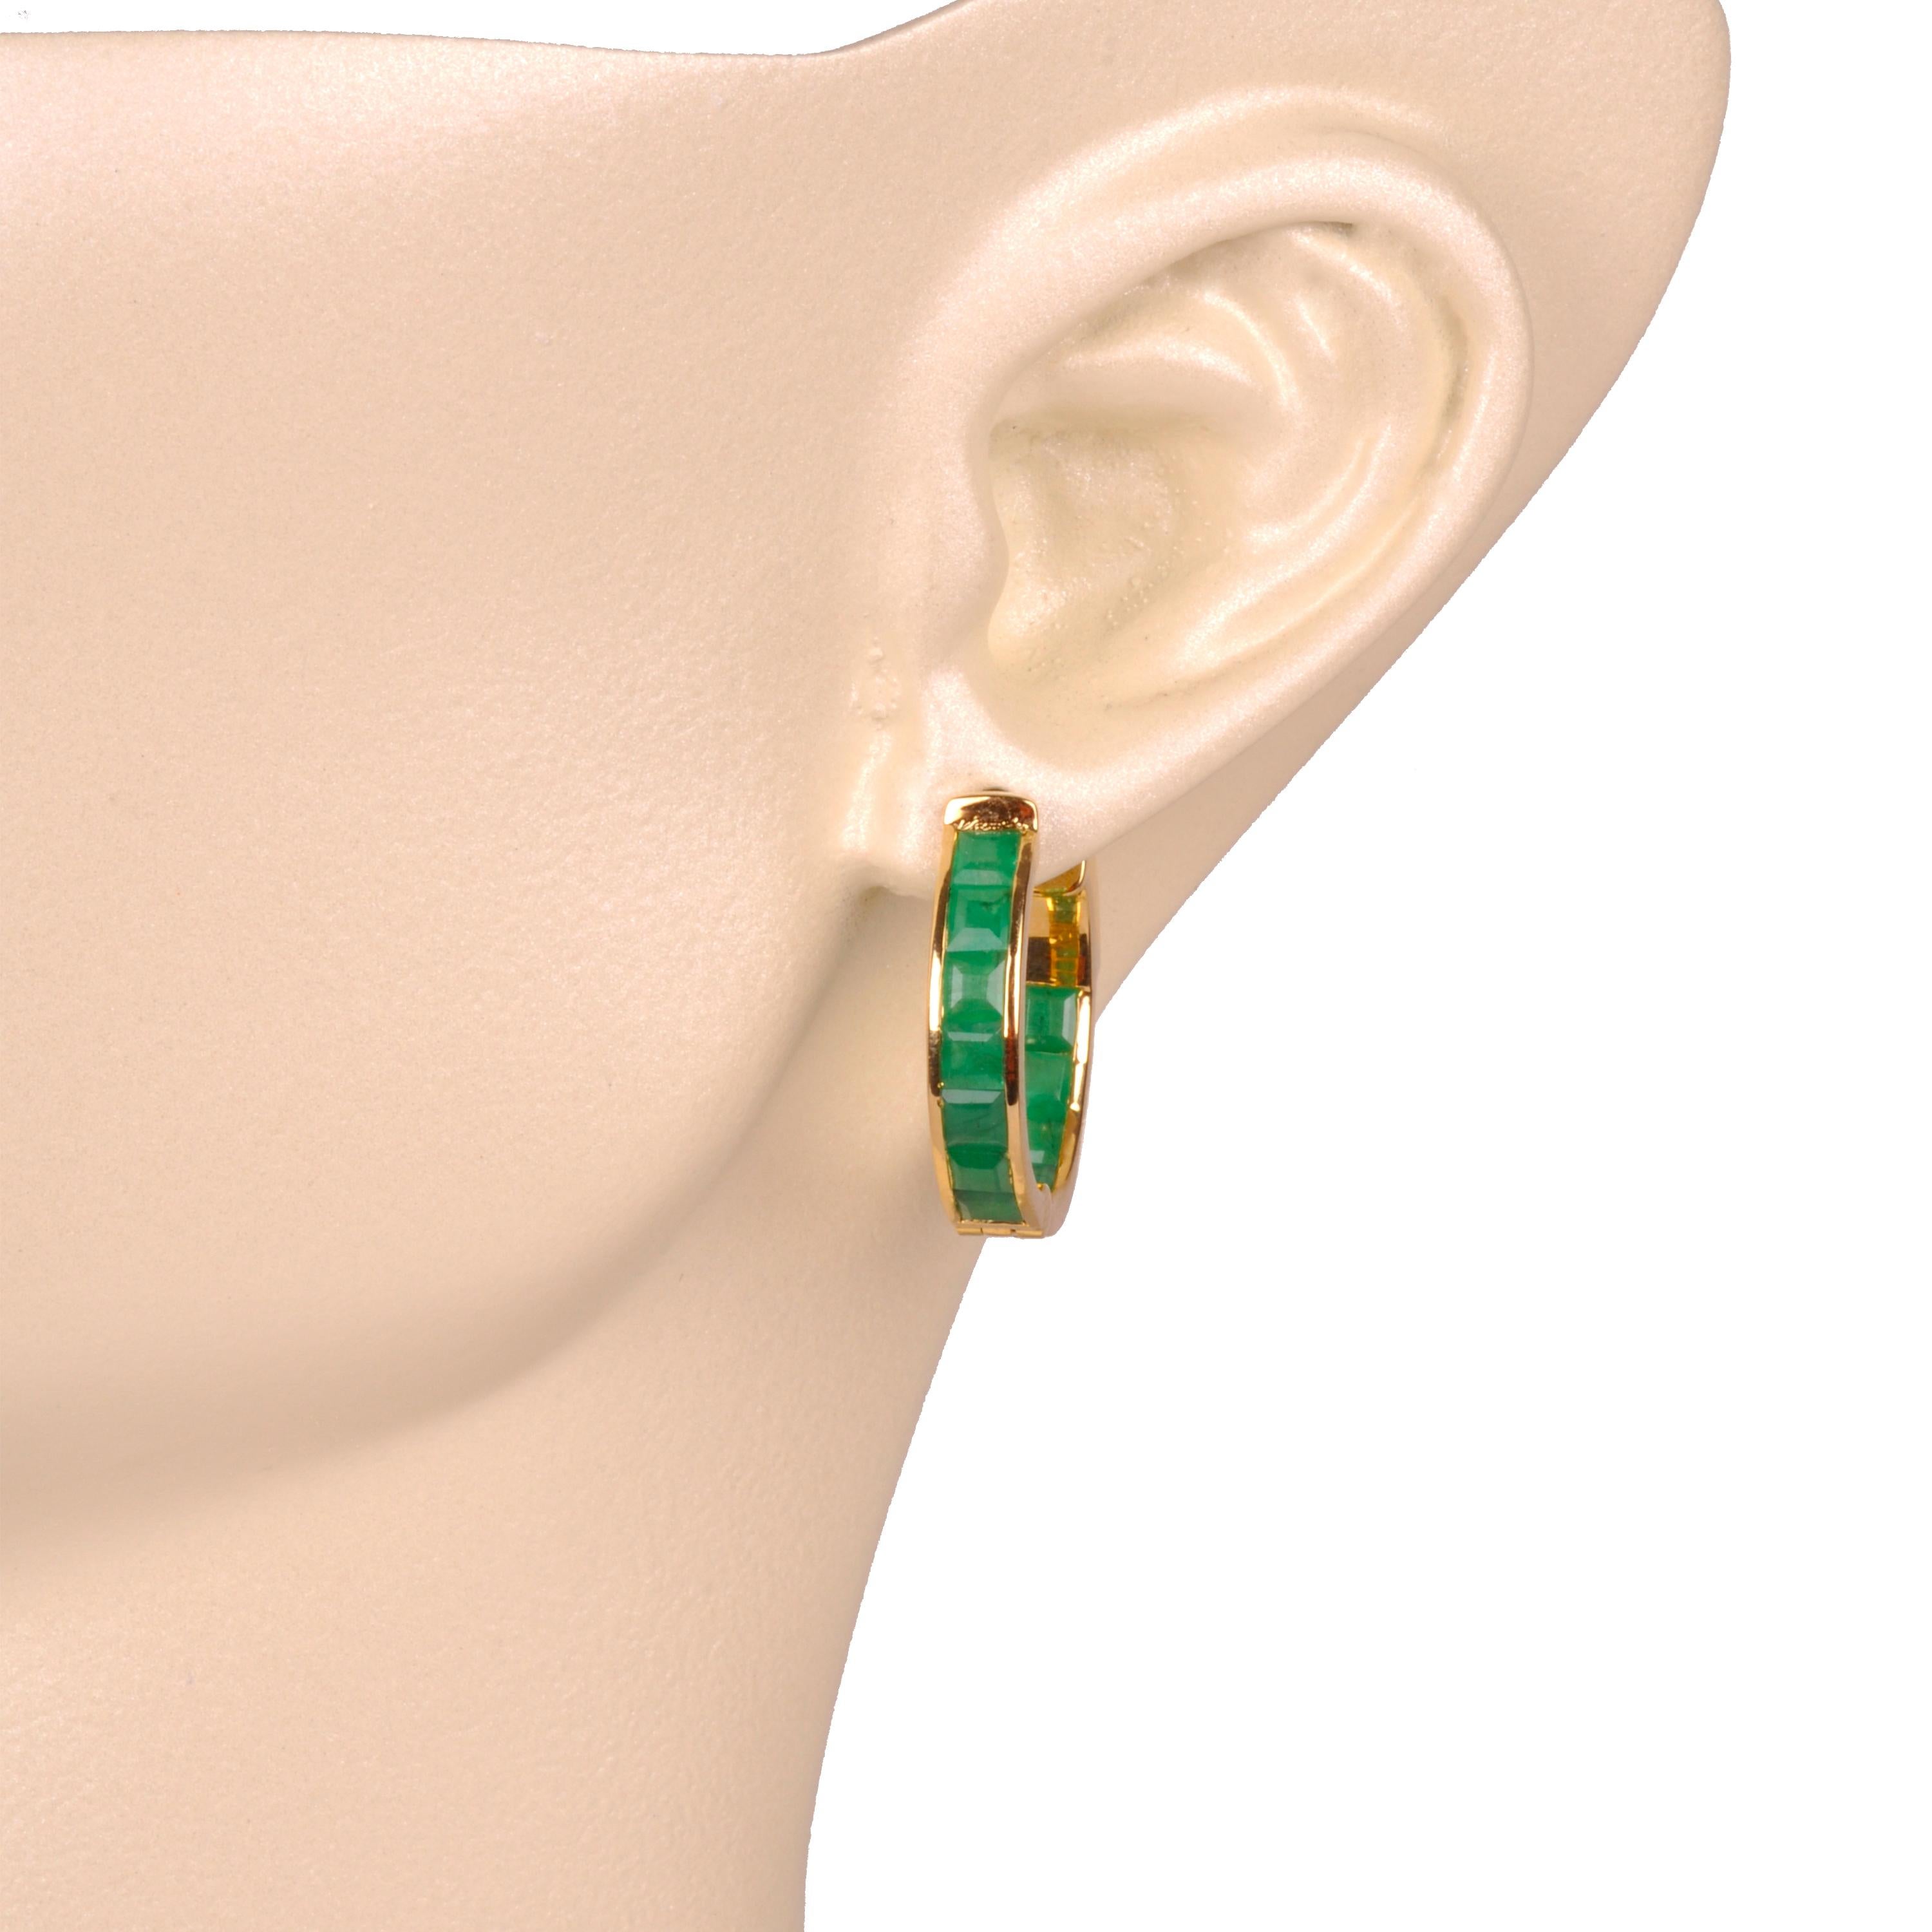 18 Karat Gelbgold 3mm quadratische natürliche brasilianische Smaragd Ohrringe.

Unsere klassischen Smaragdring-Ohrringe sind eine zeitlose Mischung aus Eleganz und Raffinesse. Diese mit viel Liebe zum Detail gefertigten, exquisiten Ohrringe strahlen